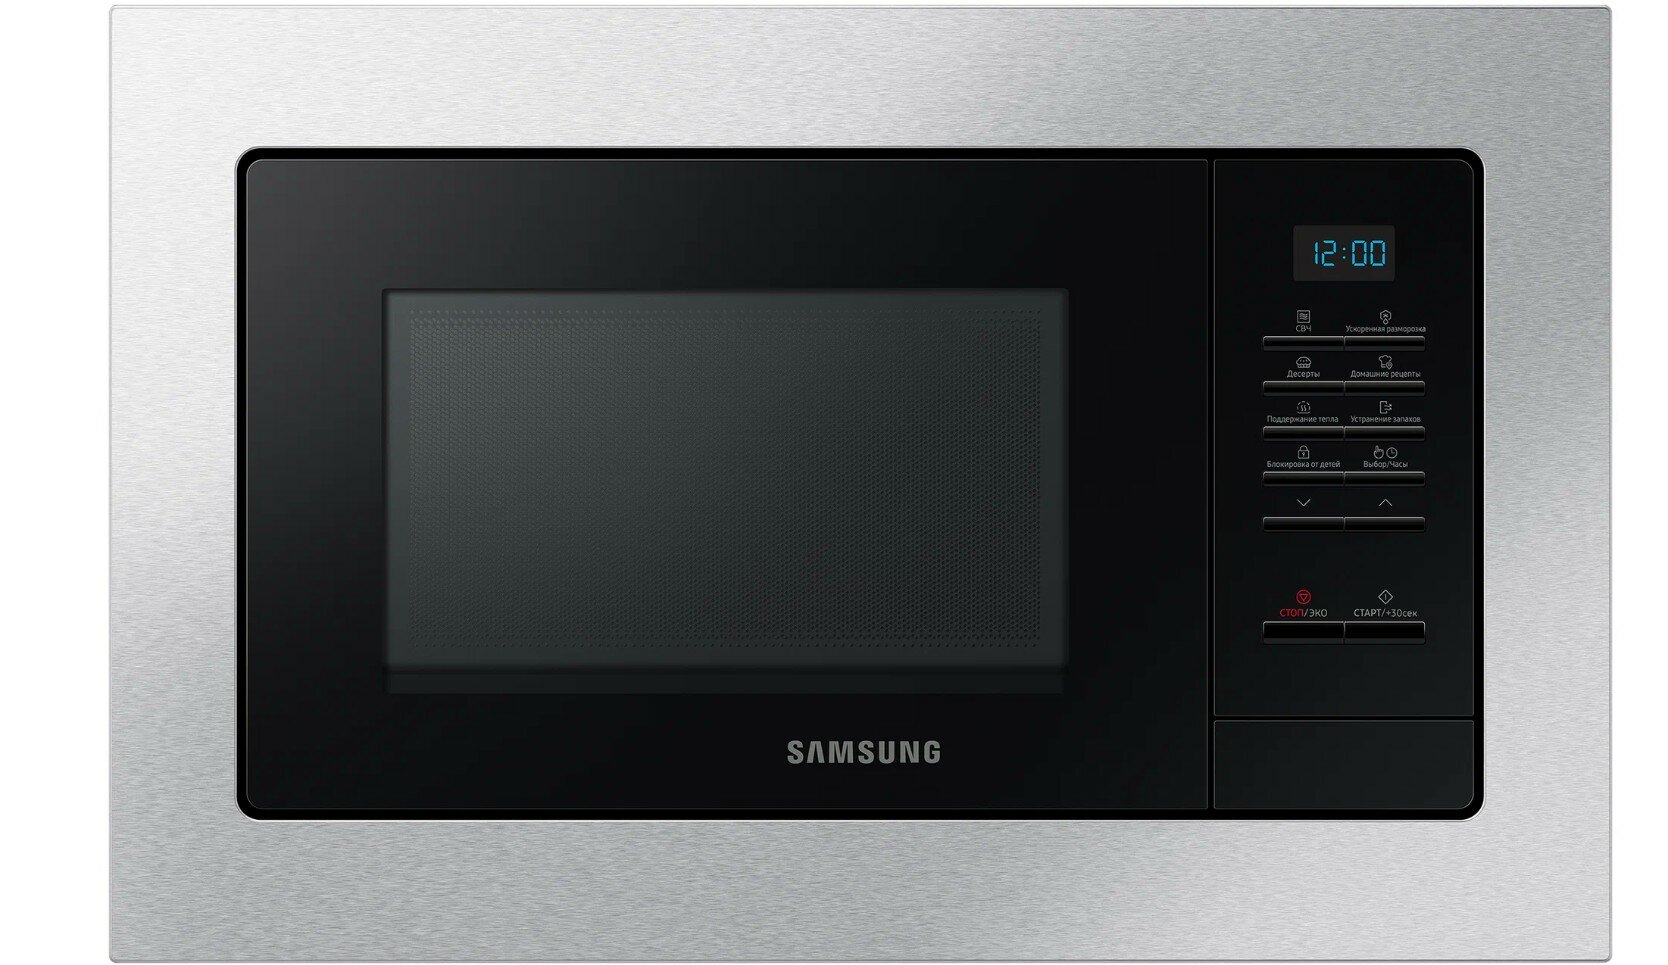 Микроволновая печь встраиваемая Samsung MS20A7013AT, серебристый/черный